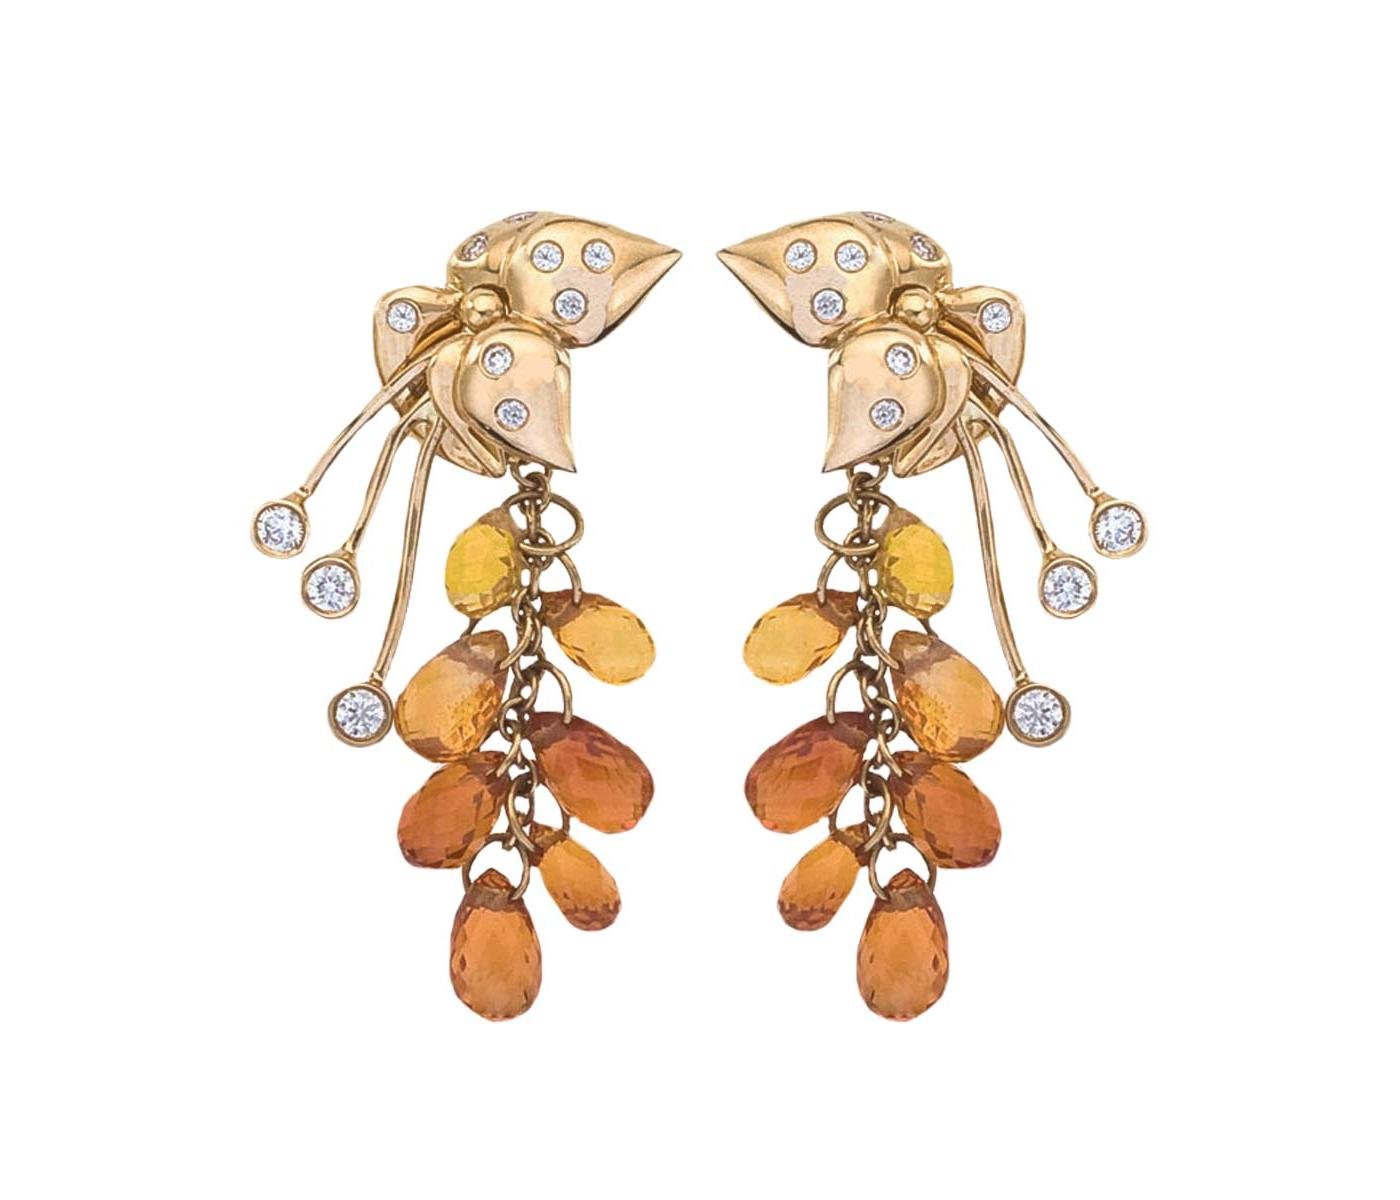 Earrings by Katherine Jetter